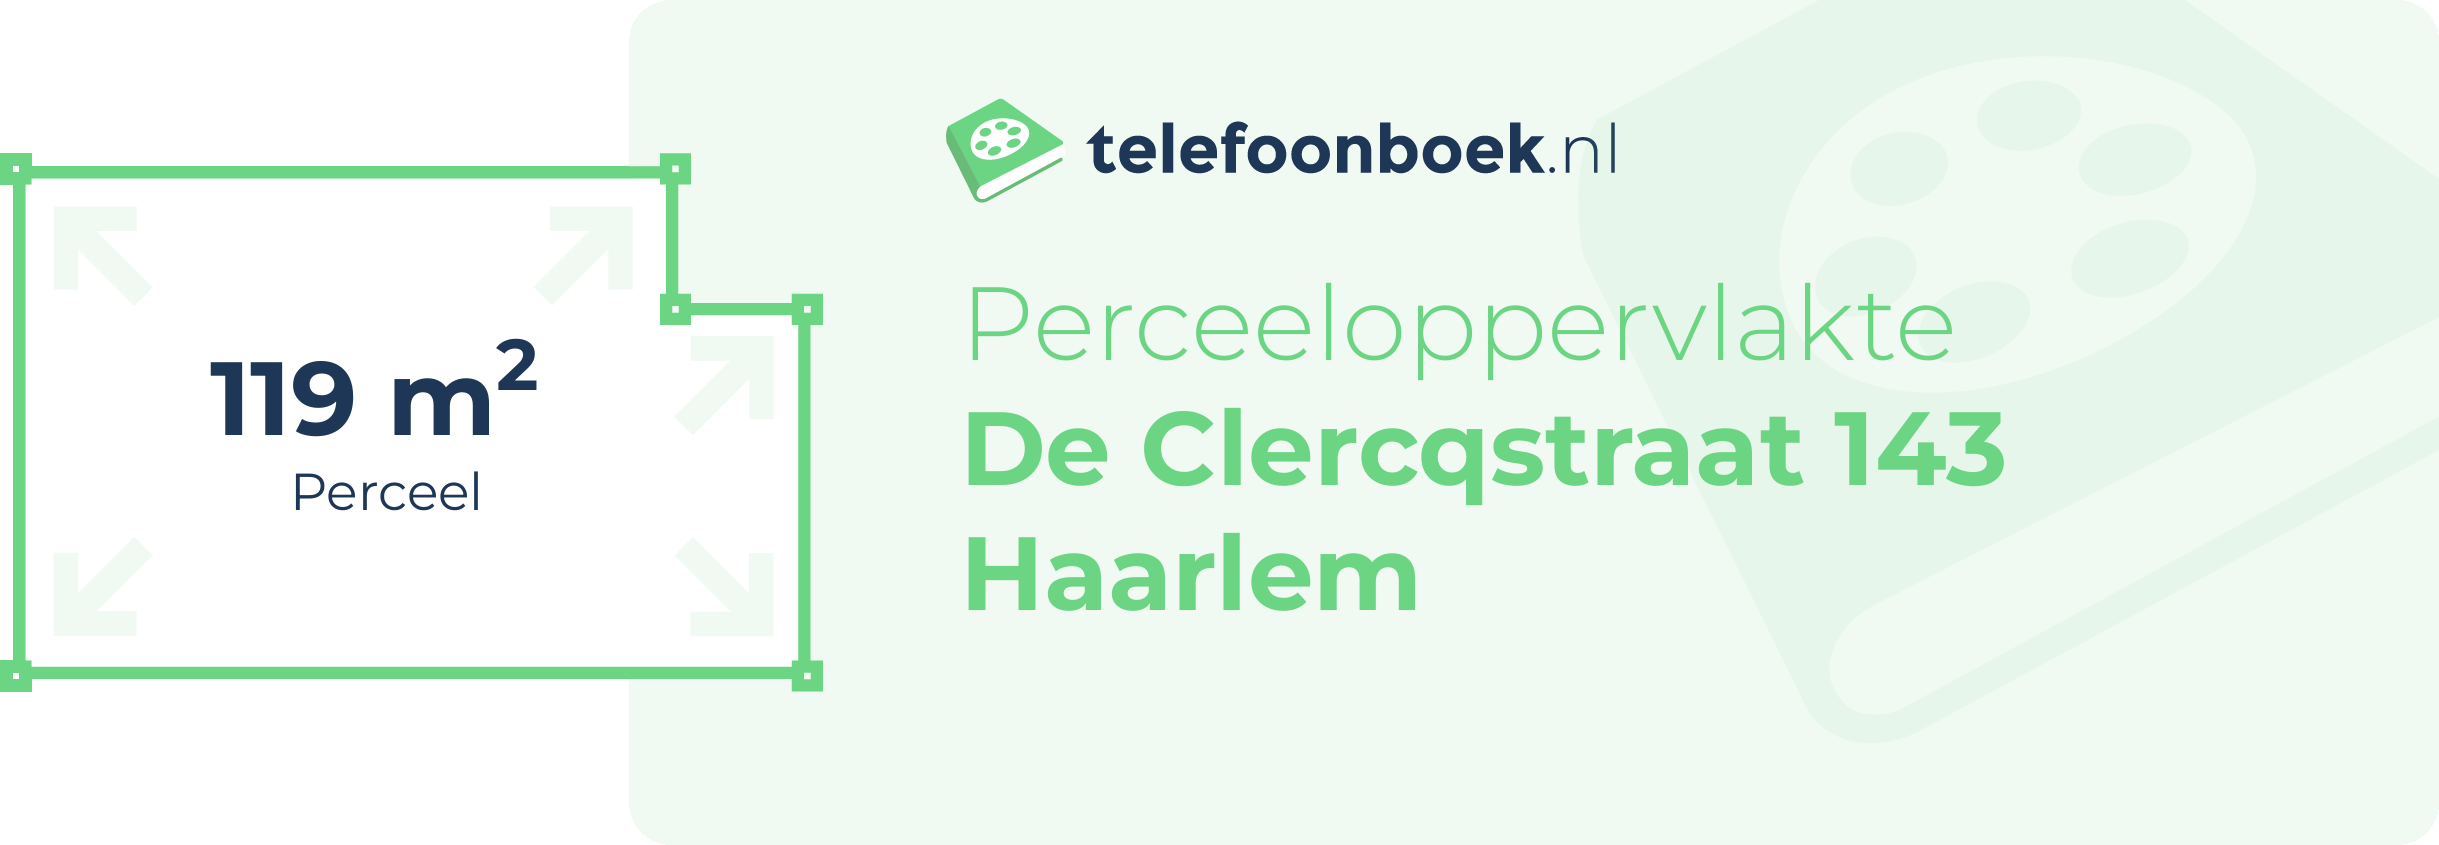 Perceeloppervlakte De Clercqstraat 143 Haarlem